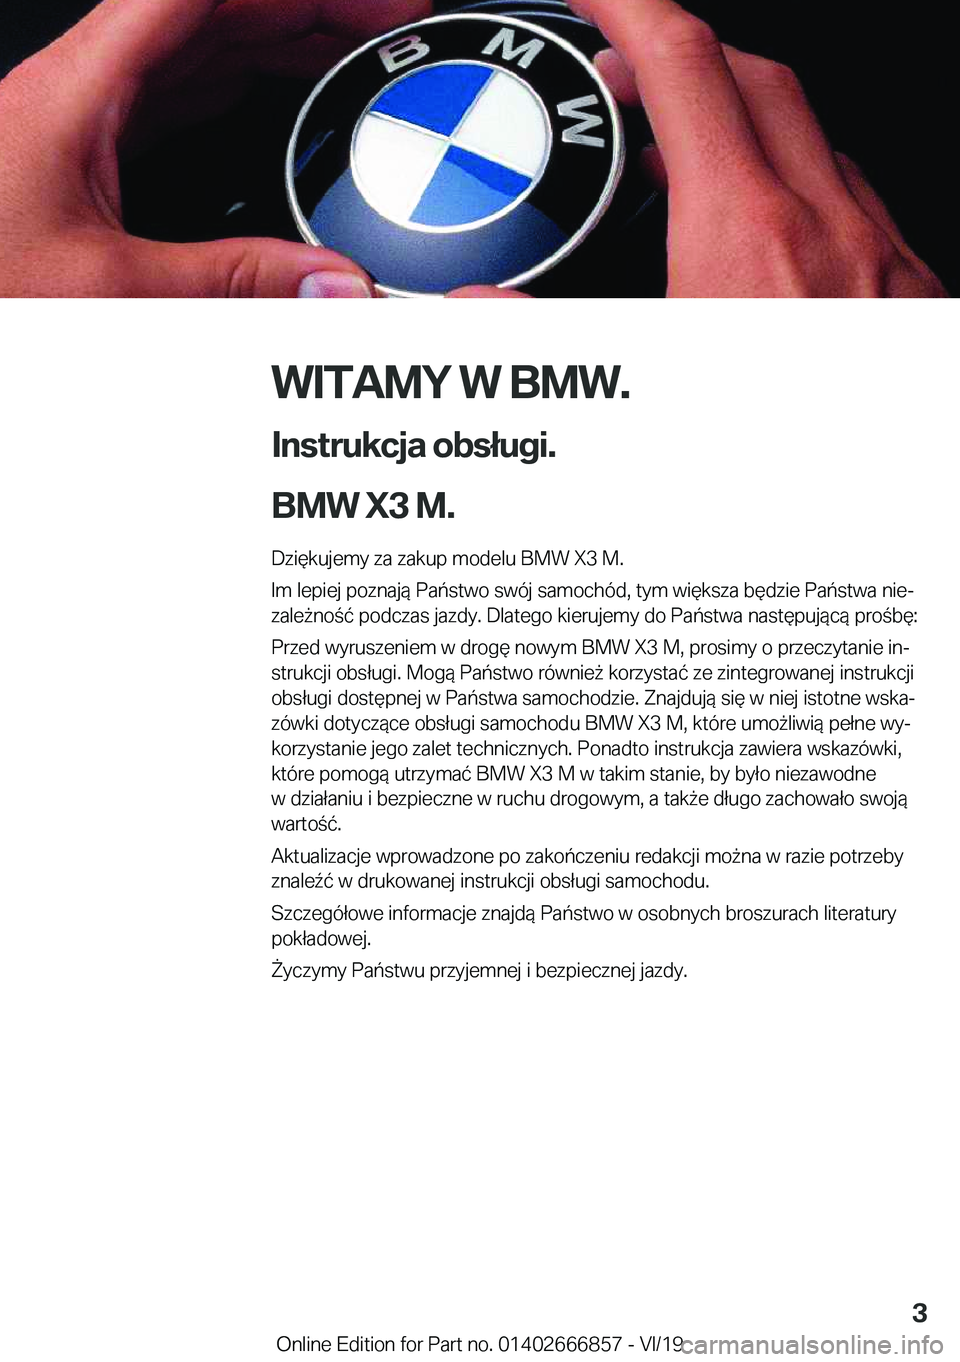 BMW X3 M 2020  Instrukcja obsługi (in Polish) �W�I�T�A�M�Y��W��B�M�W�.
�I�n�s�t�r�u�k�c�j�a��o�b�s�ł�u�g�i�.
�B�M�W��X�3��M�. �D�z�i�